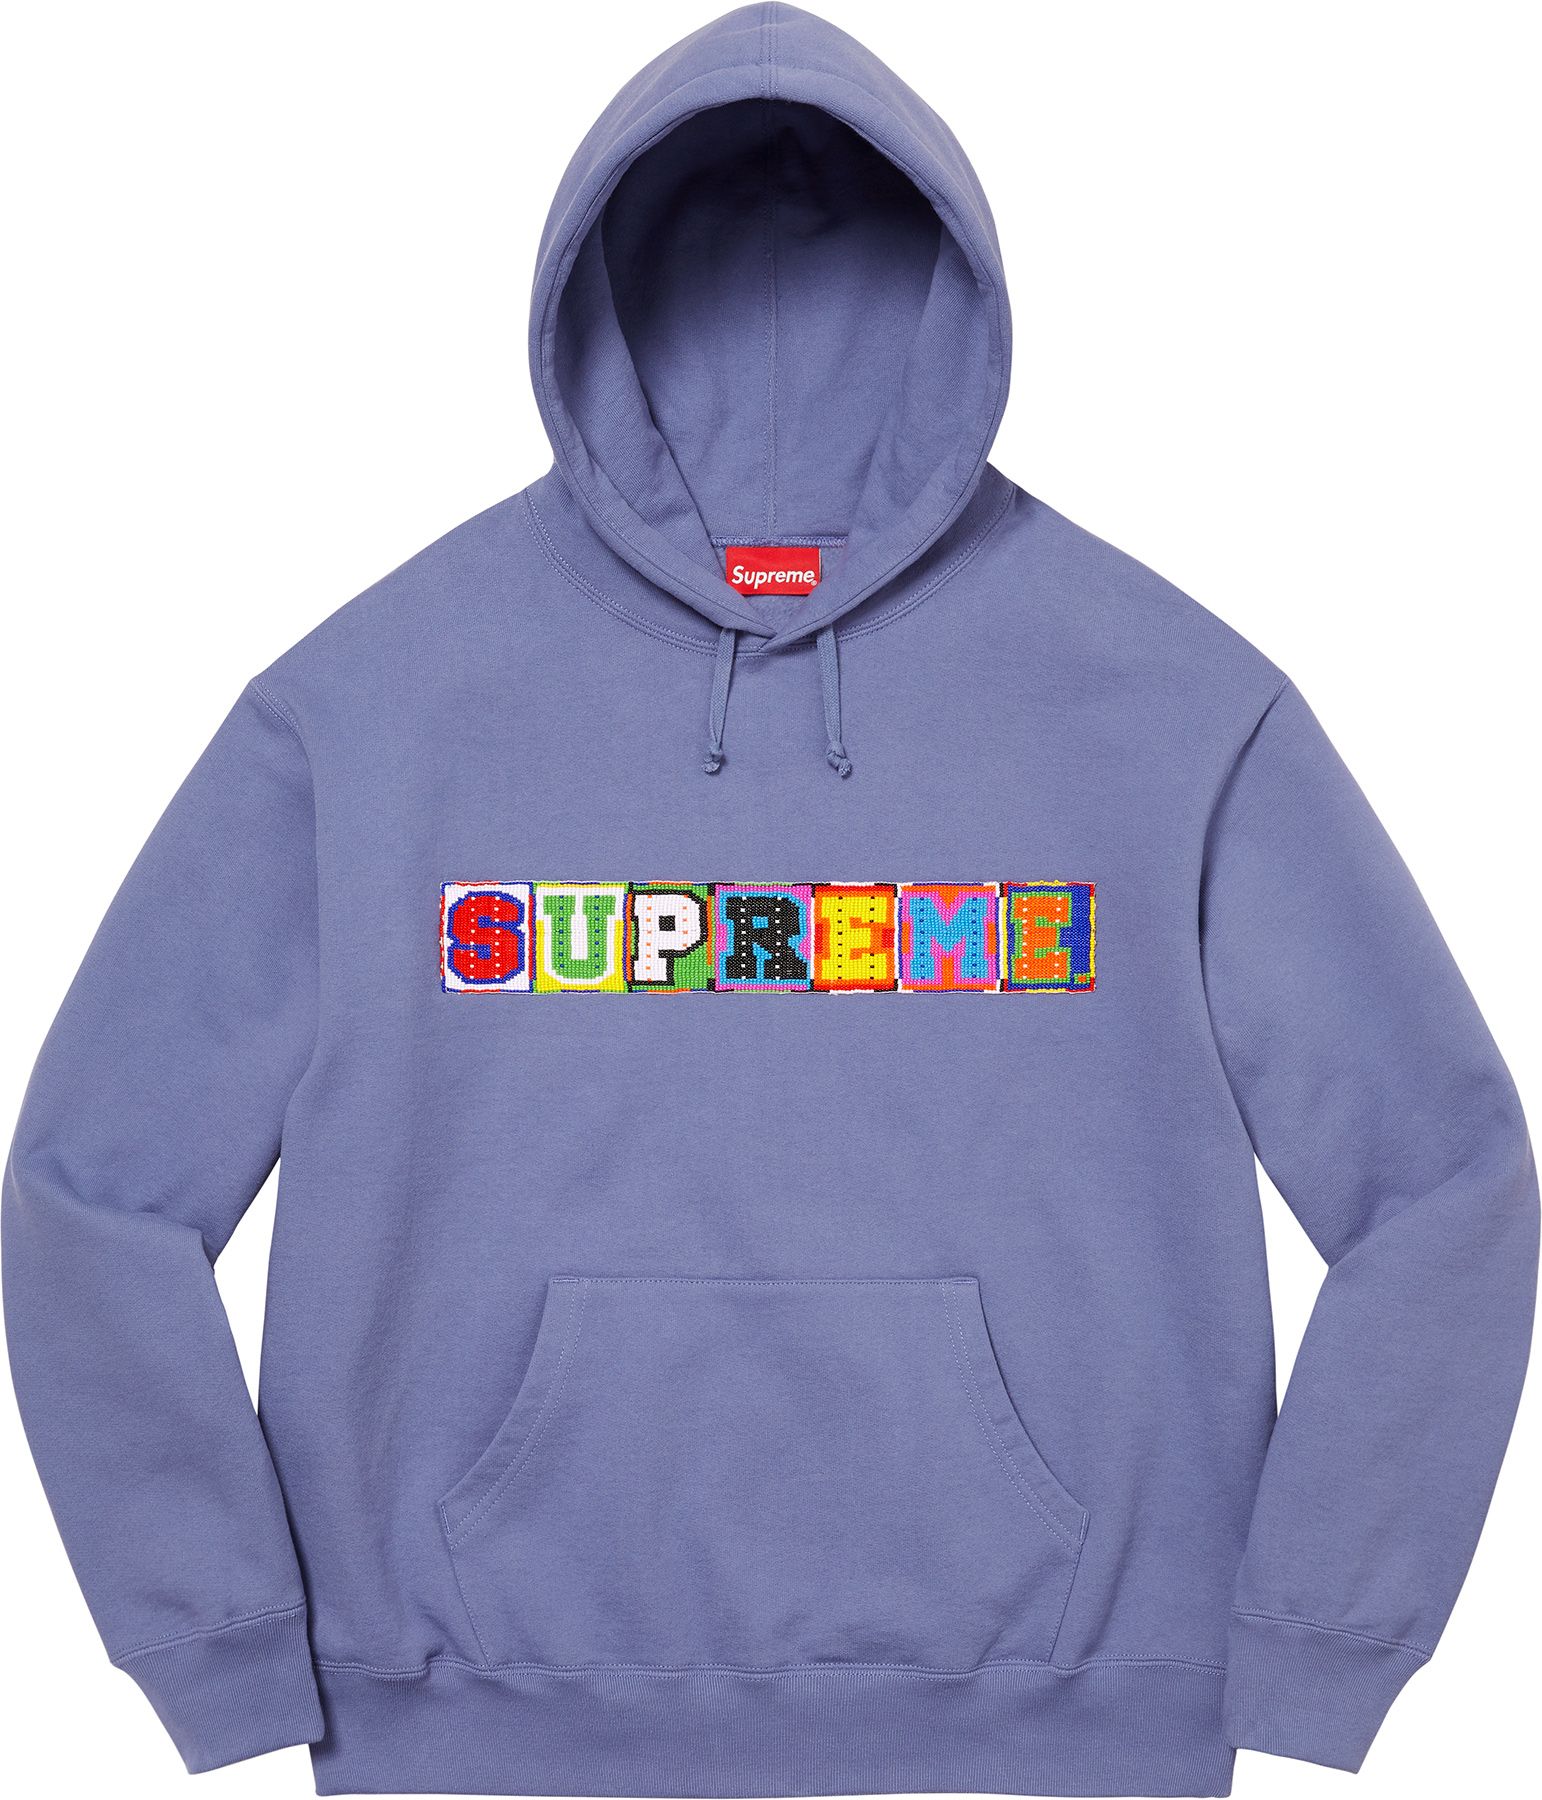 Beaded Hooded Sweatshirt – Supreme